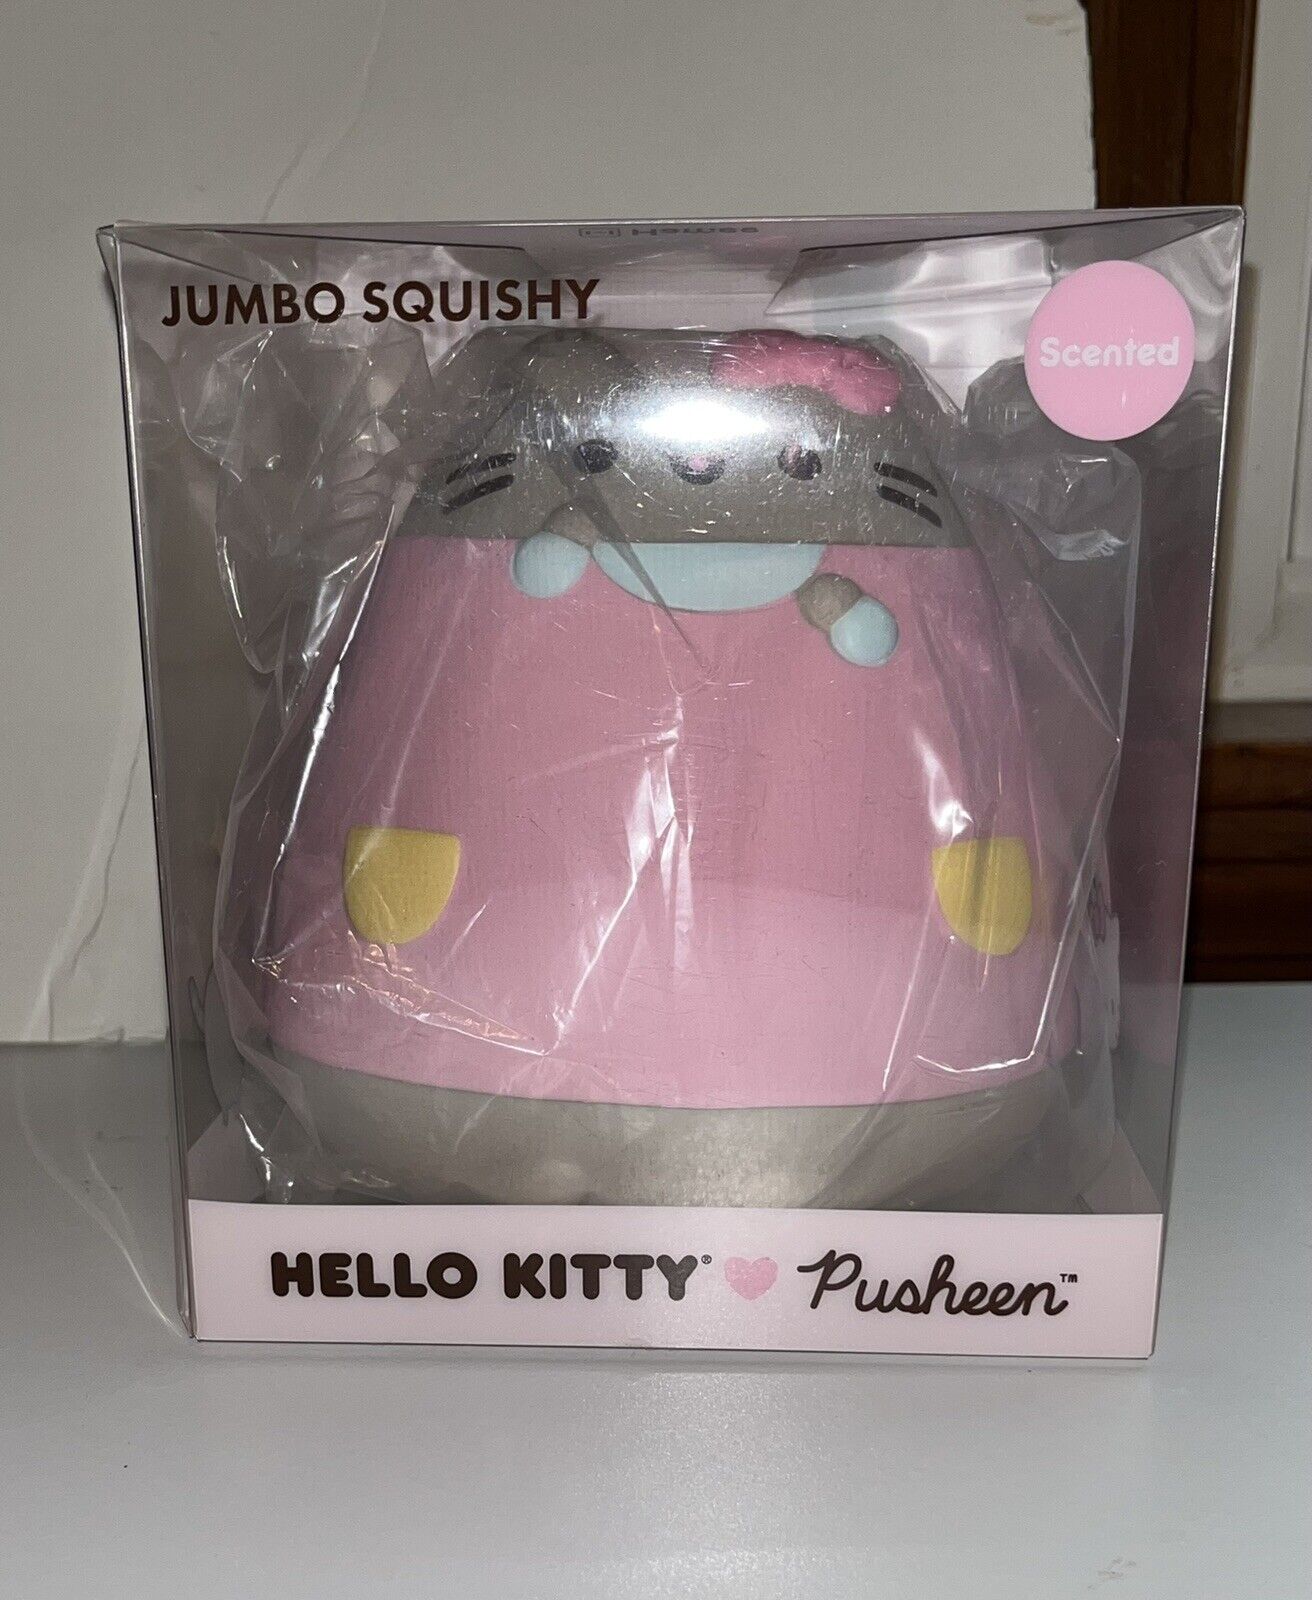 NIP Pusheen the Cat x Hello Kitty Jumbo Squishy 